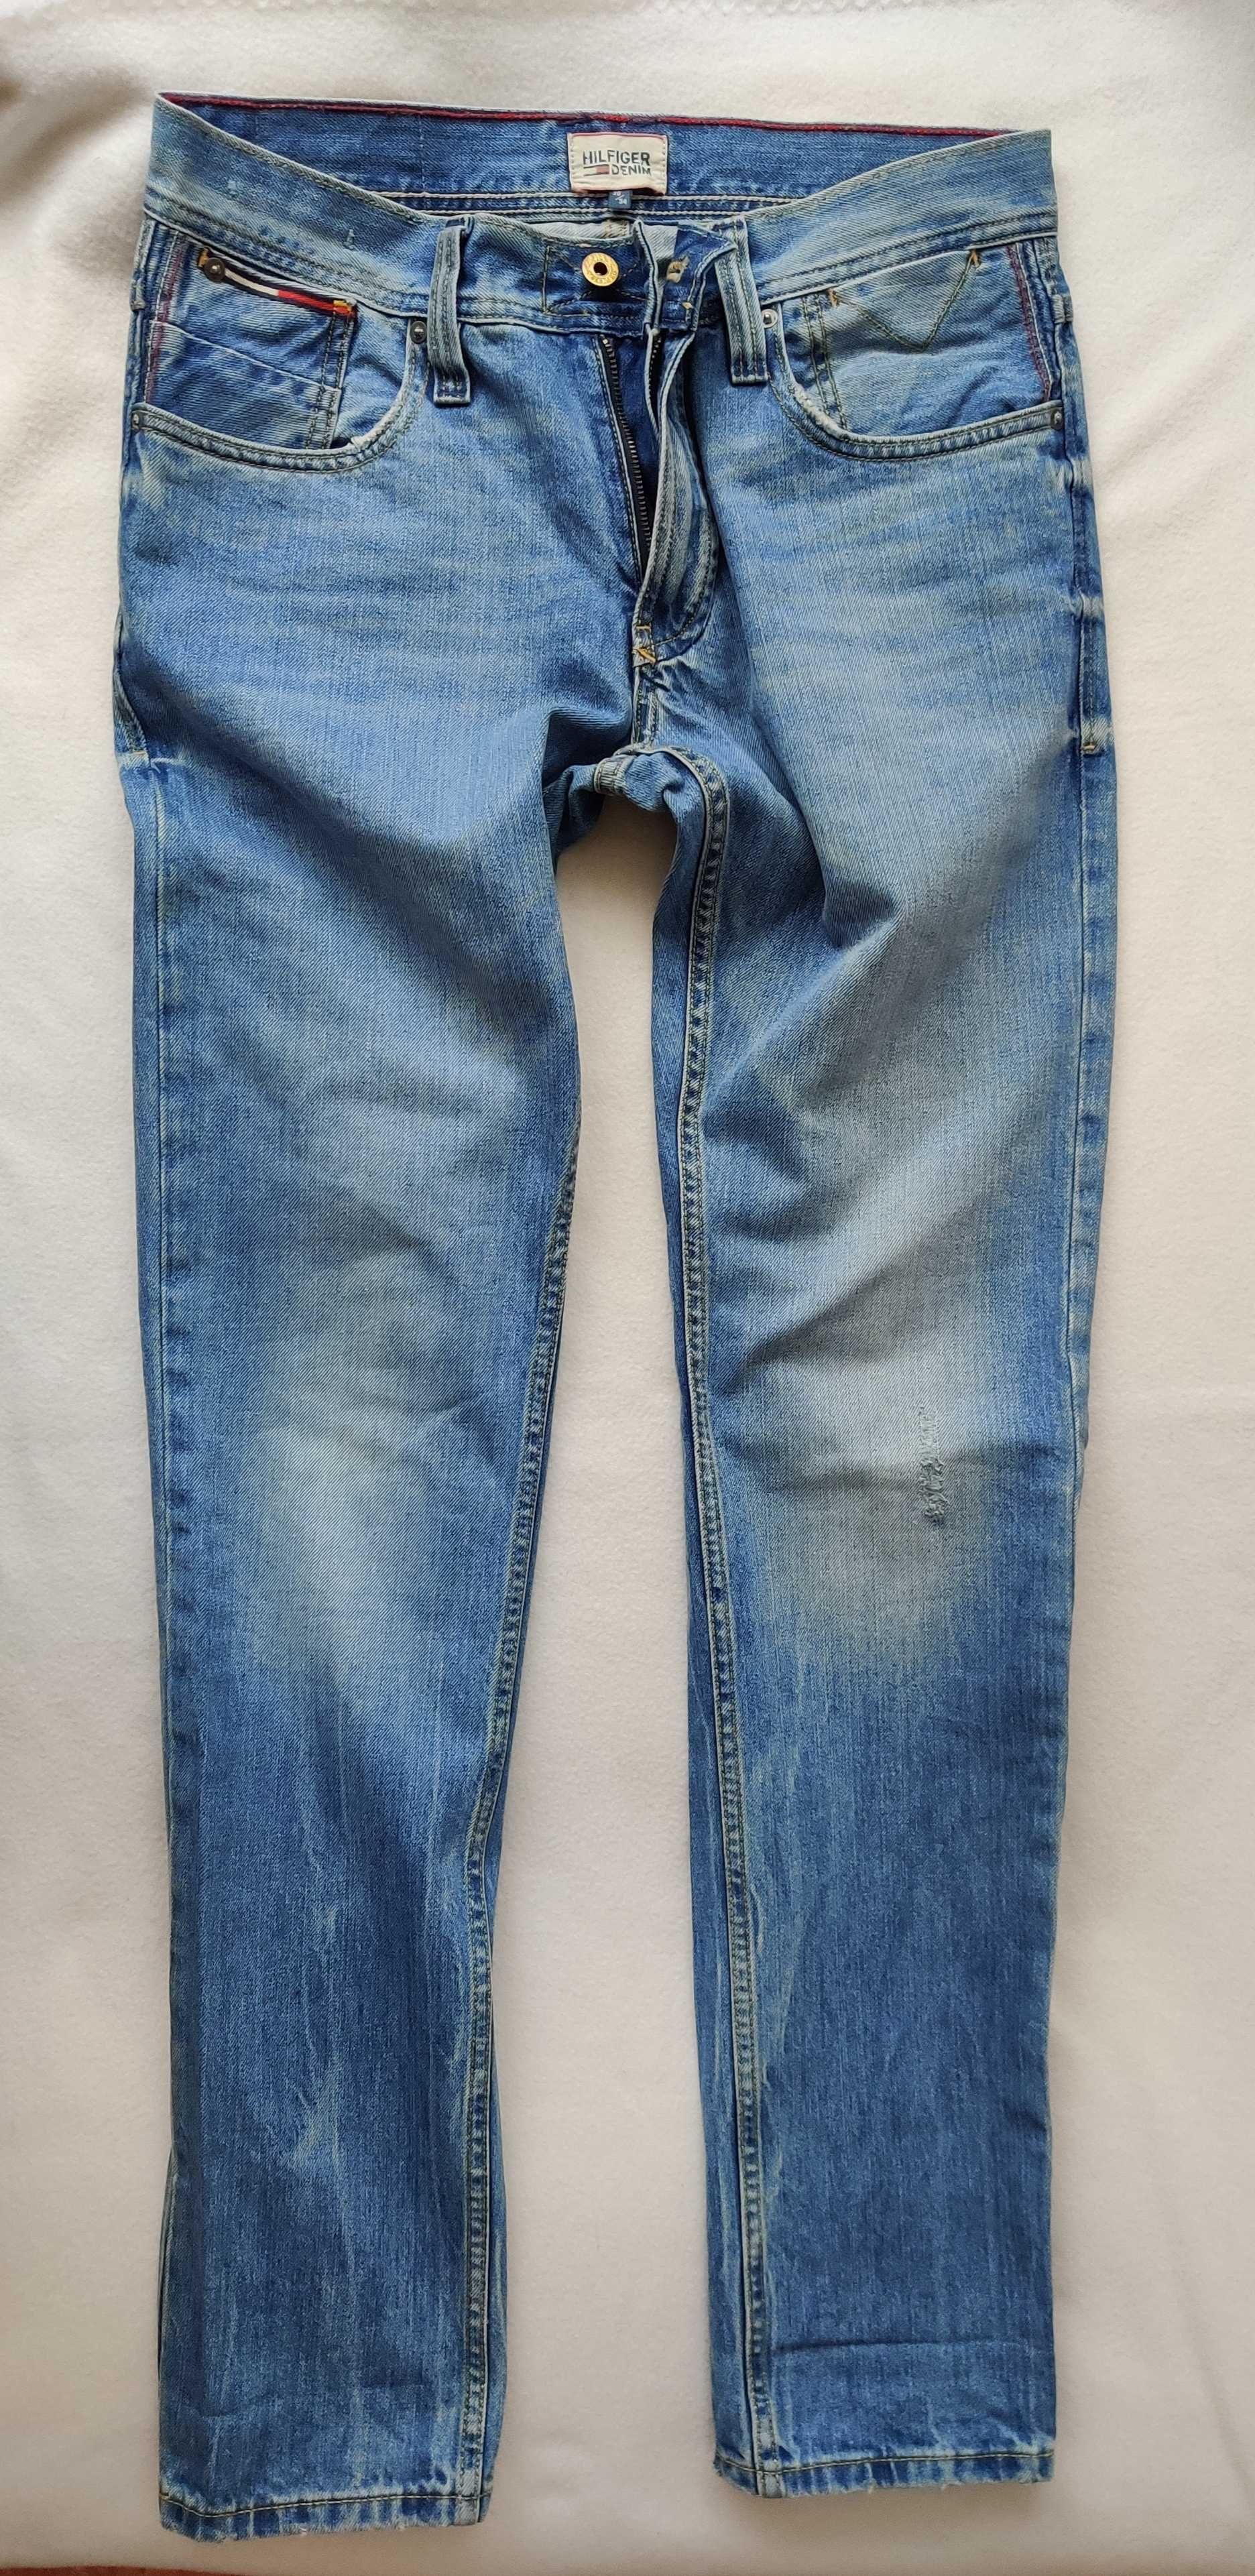 Spodnie Tommy Hilfiger Jeans 30/34 oryginalne jak nowe okazja męskie